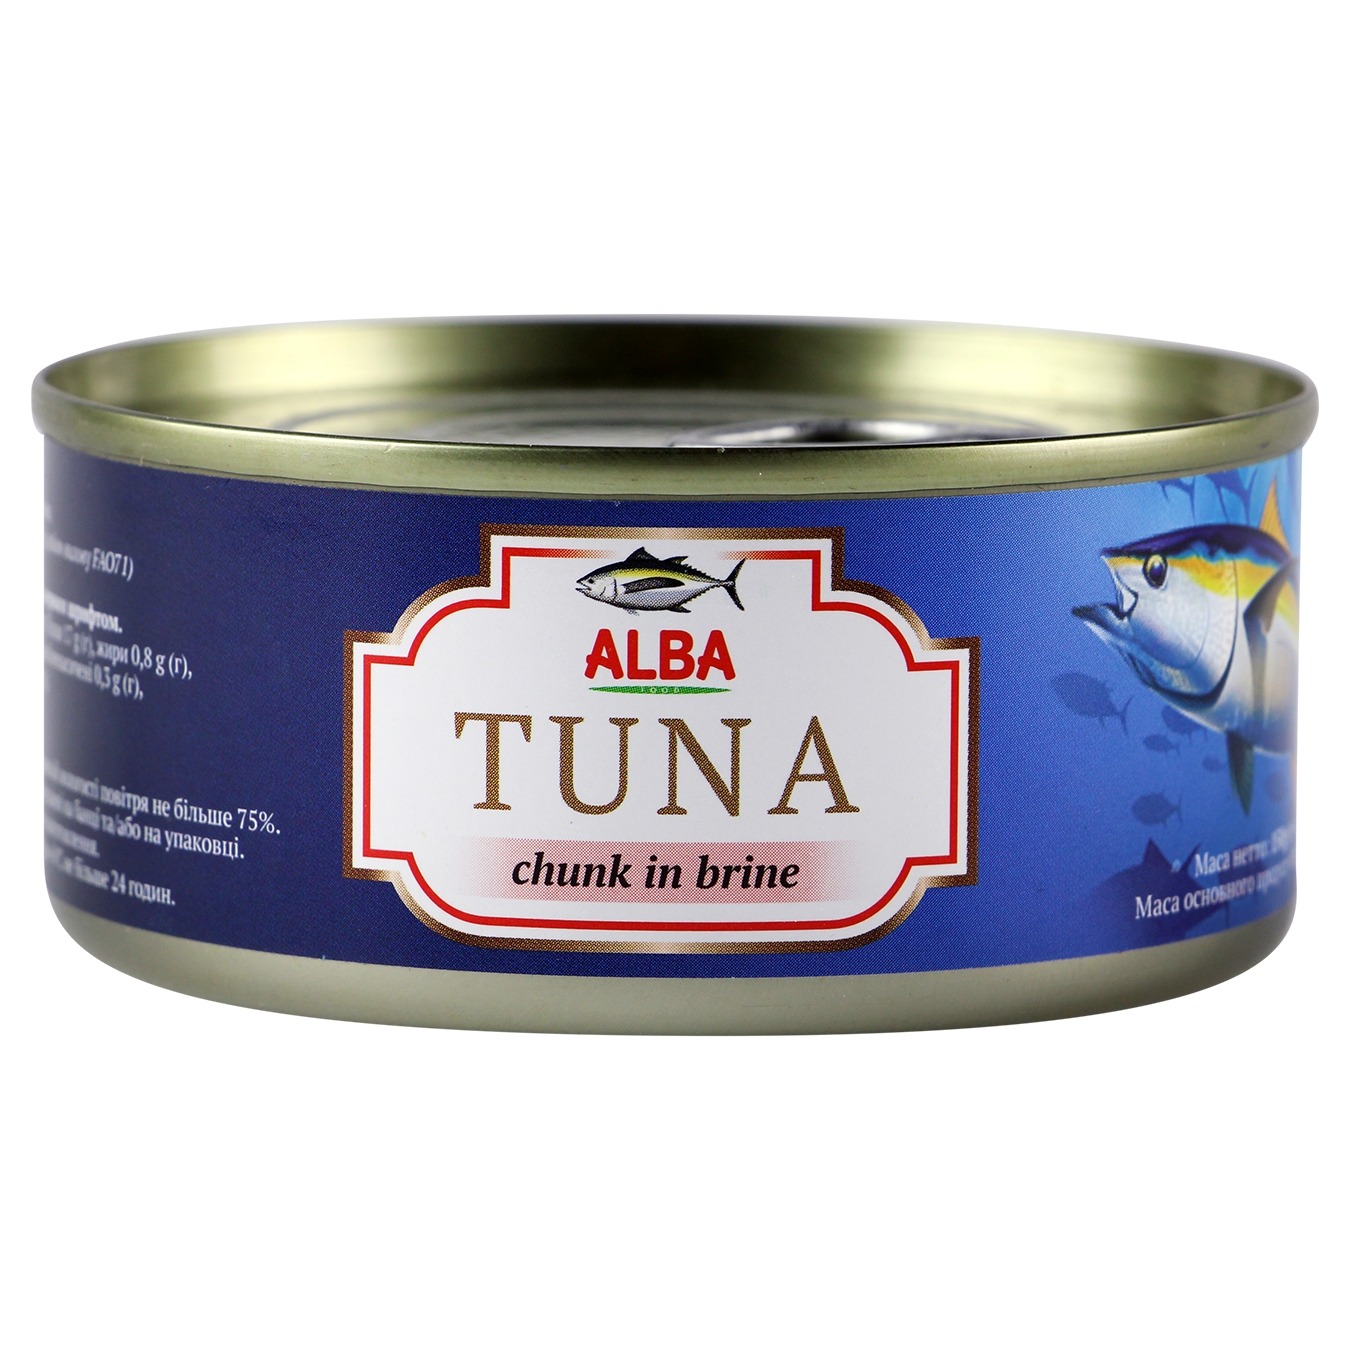 Тунець Alba Food цілий у власному соку 150г